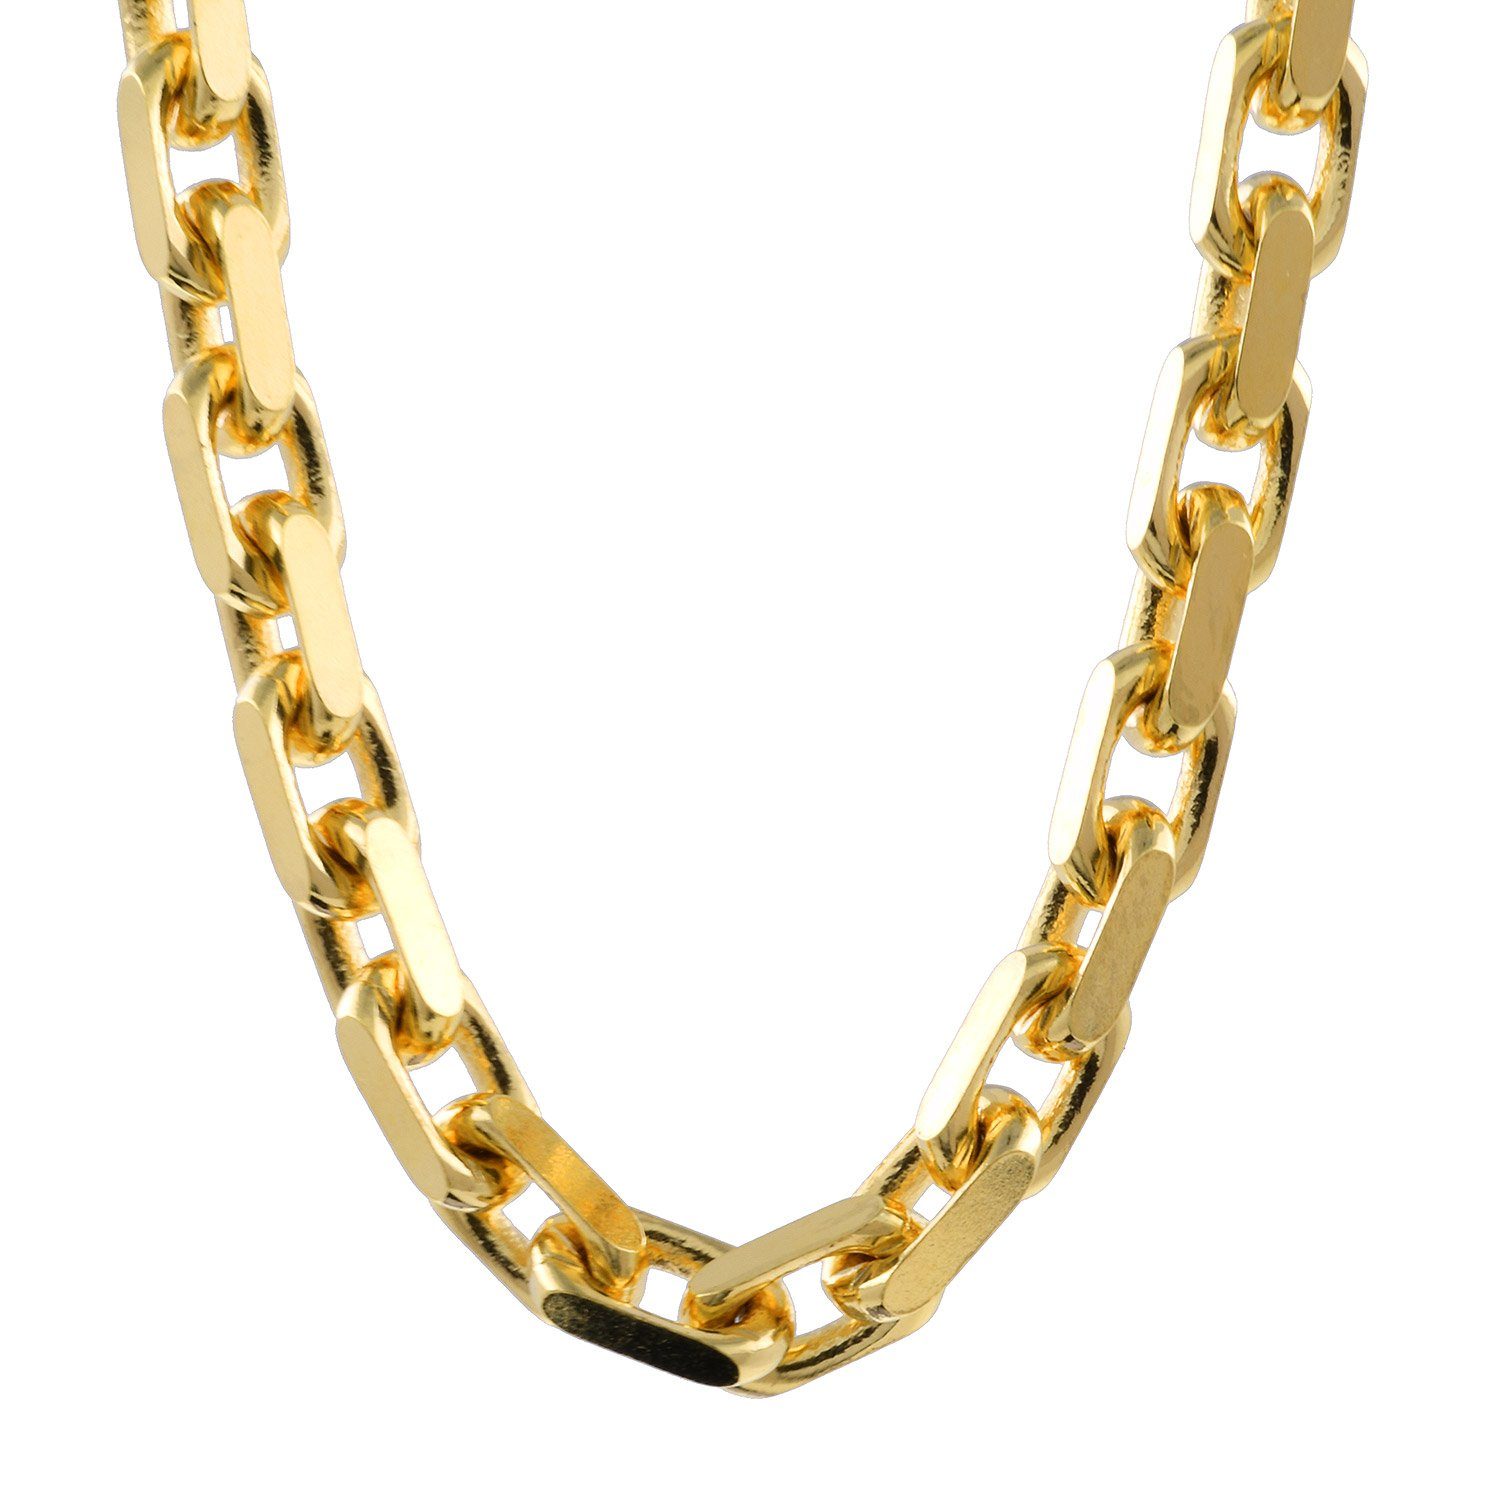 45cm Edle - Juwelier diamantiert HOPLO Gold, Goldkette Ankerkette Breite Länge Made Qualität in Germany, - 750-18 3,0mm Karat Kette in